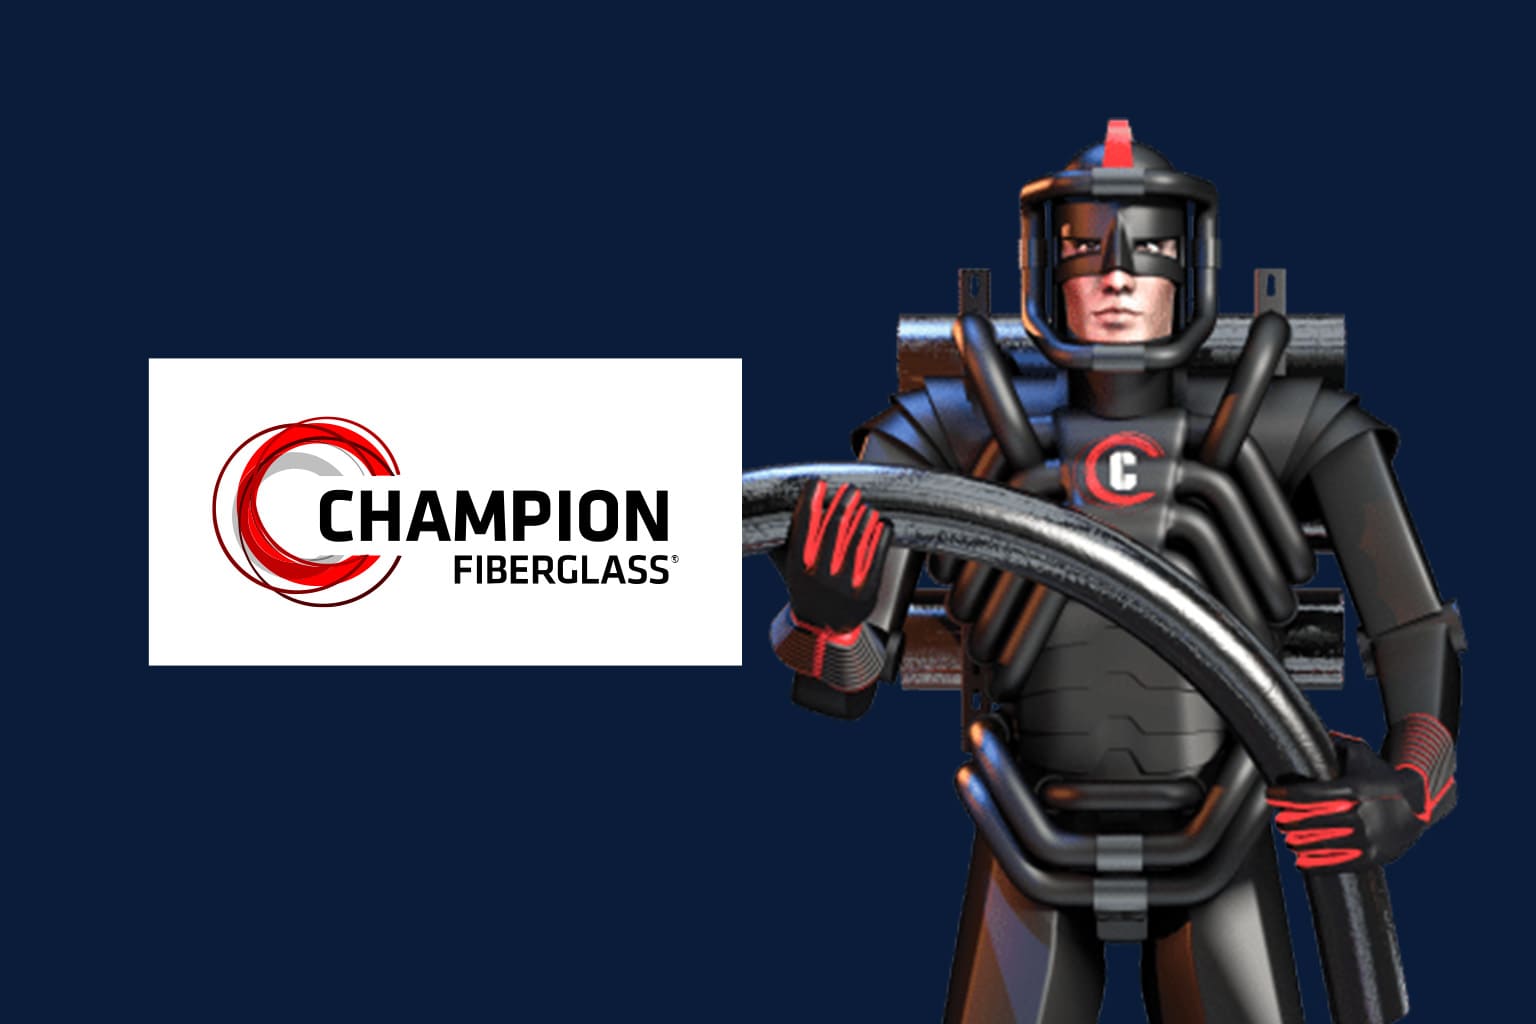 Champion Fiberglass logo and Champ